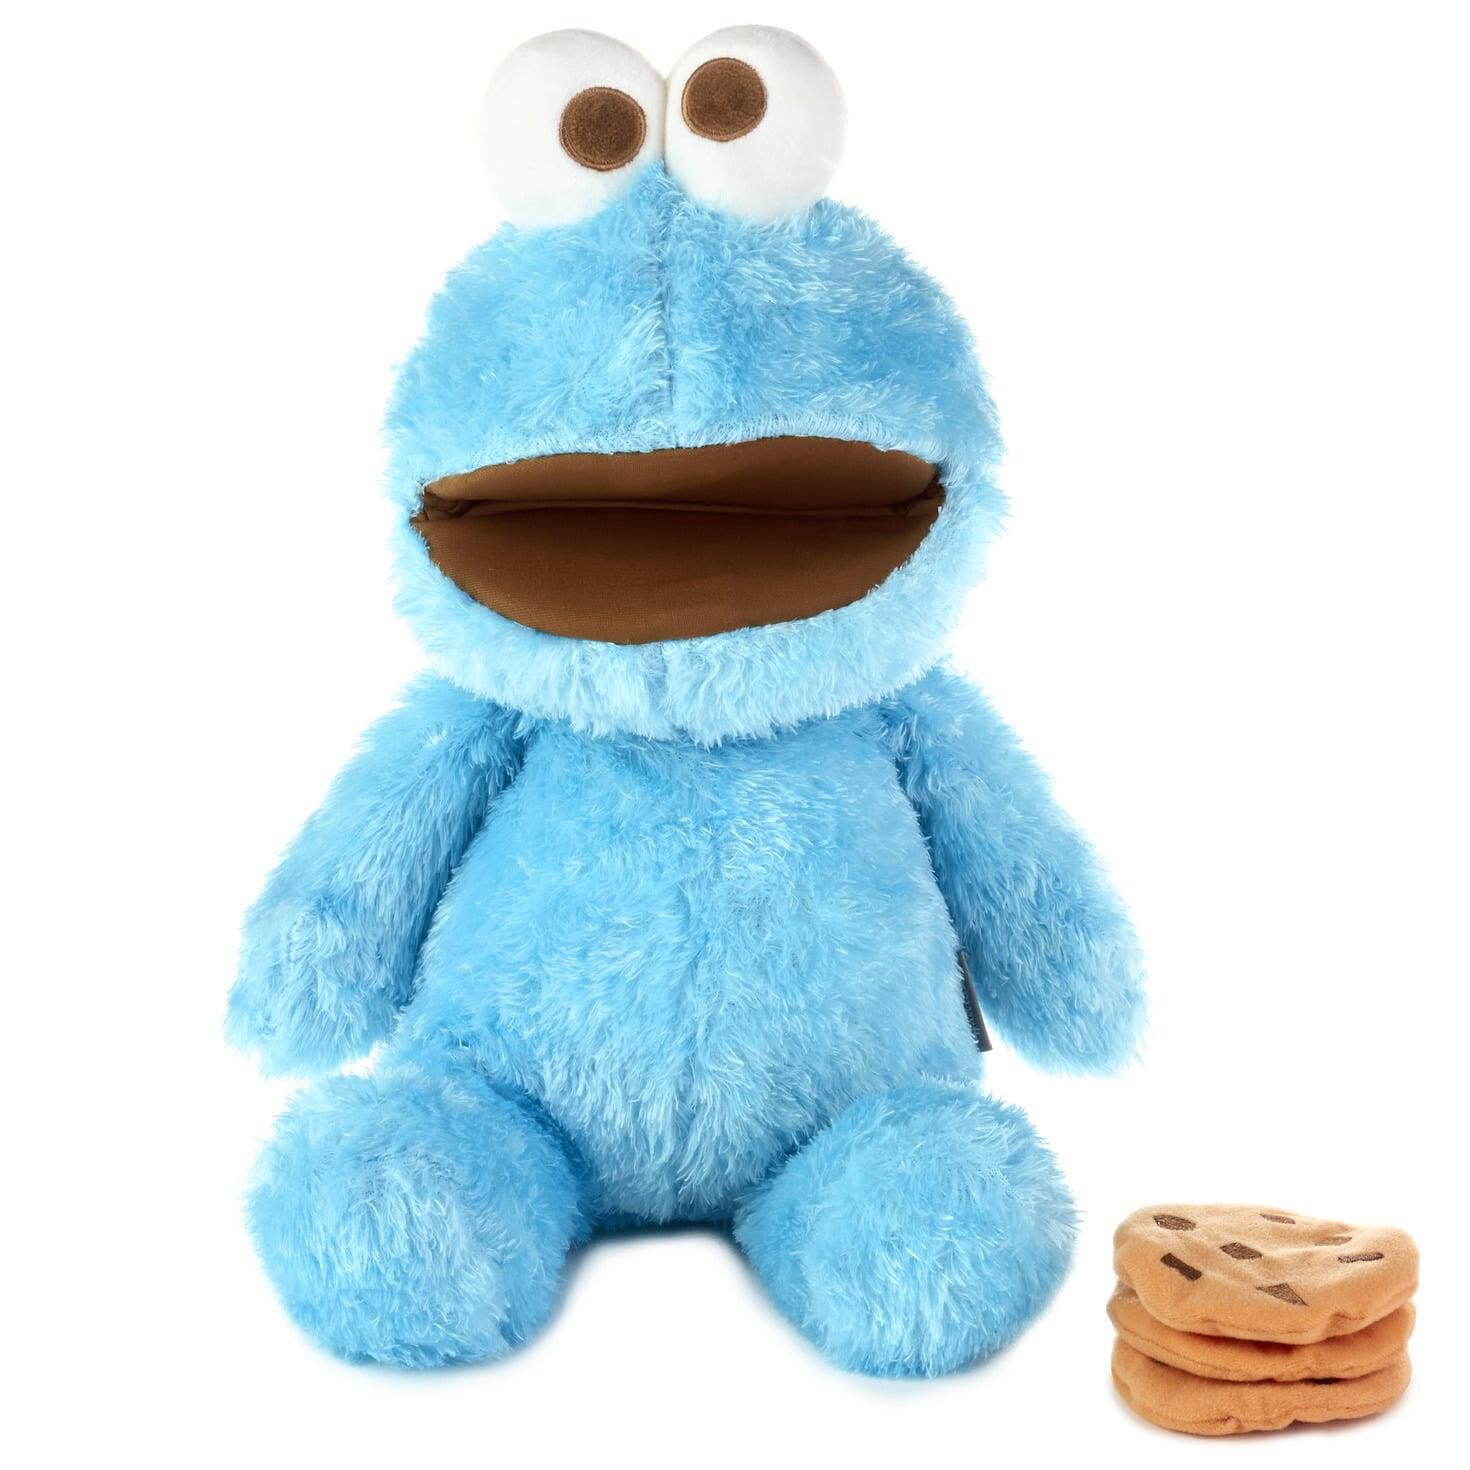 sesame street cookie monster plush